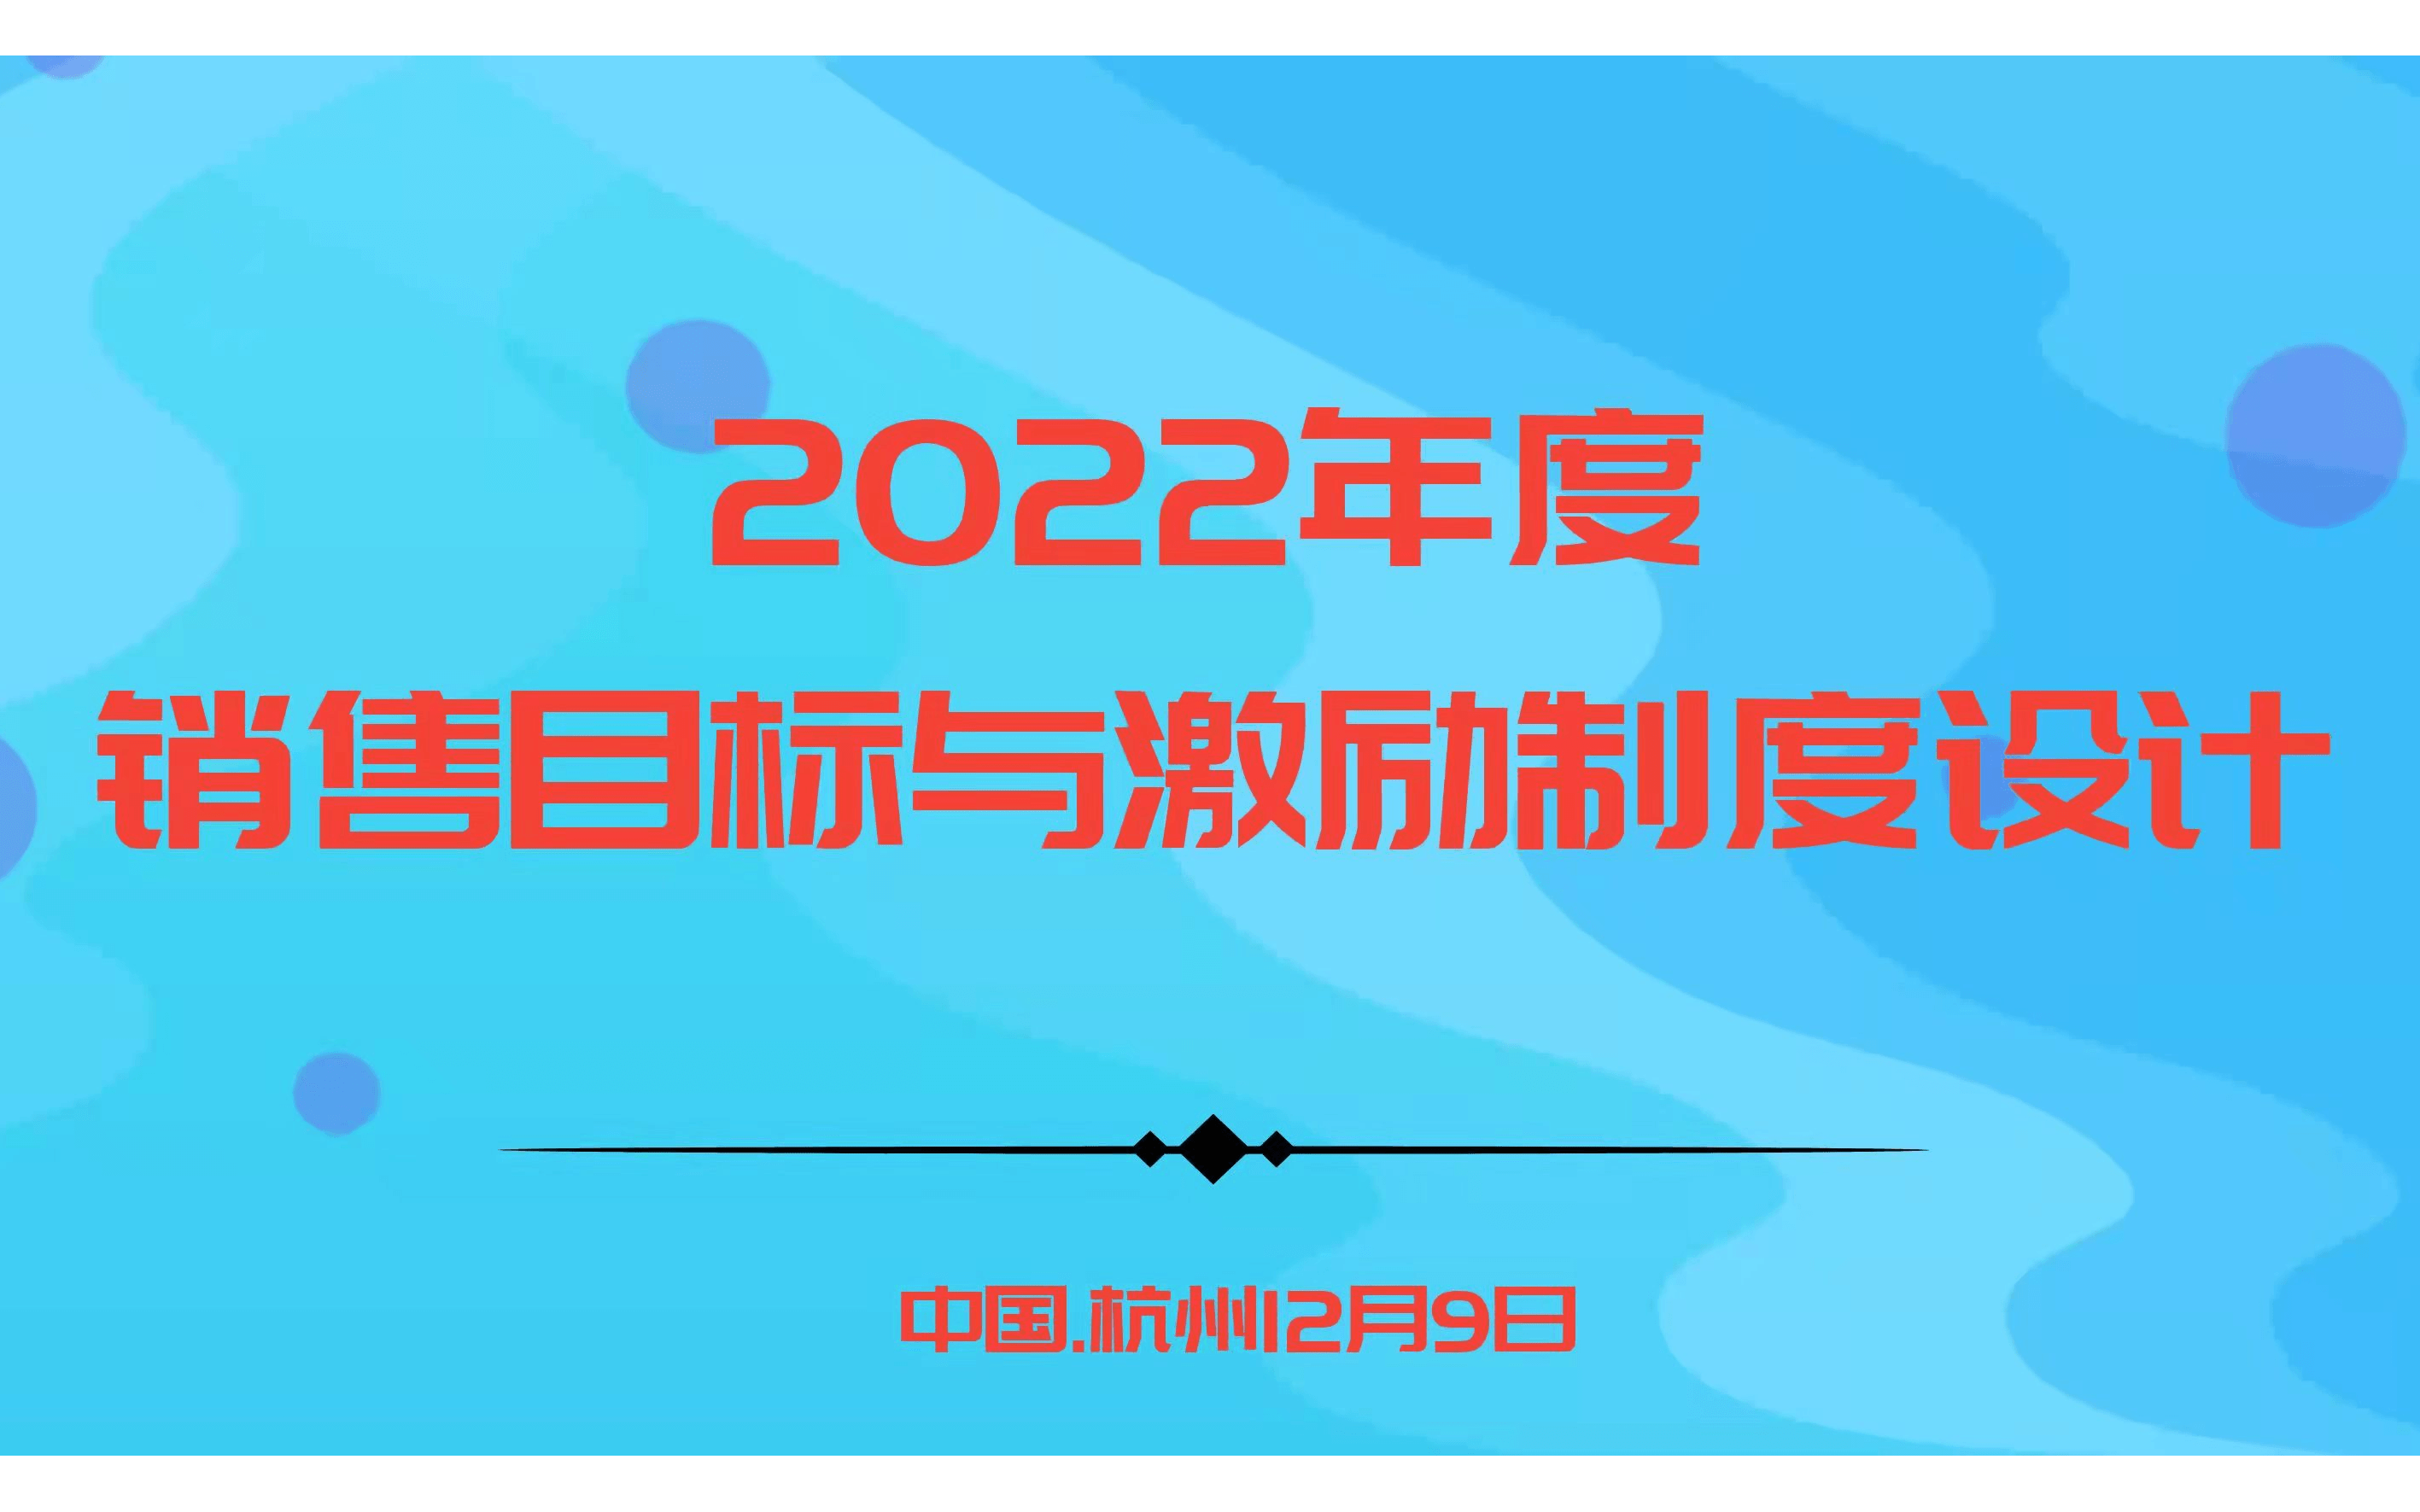 華為、阿里指定課程－2022年度銷售目標與激勵制度設計 |杭州12.9歐圖歐商學院